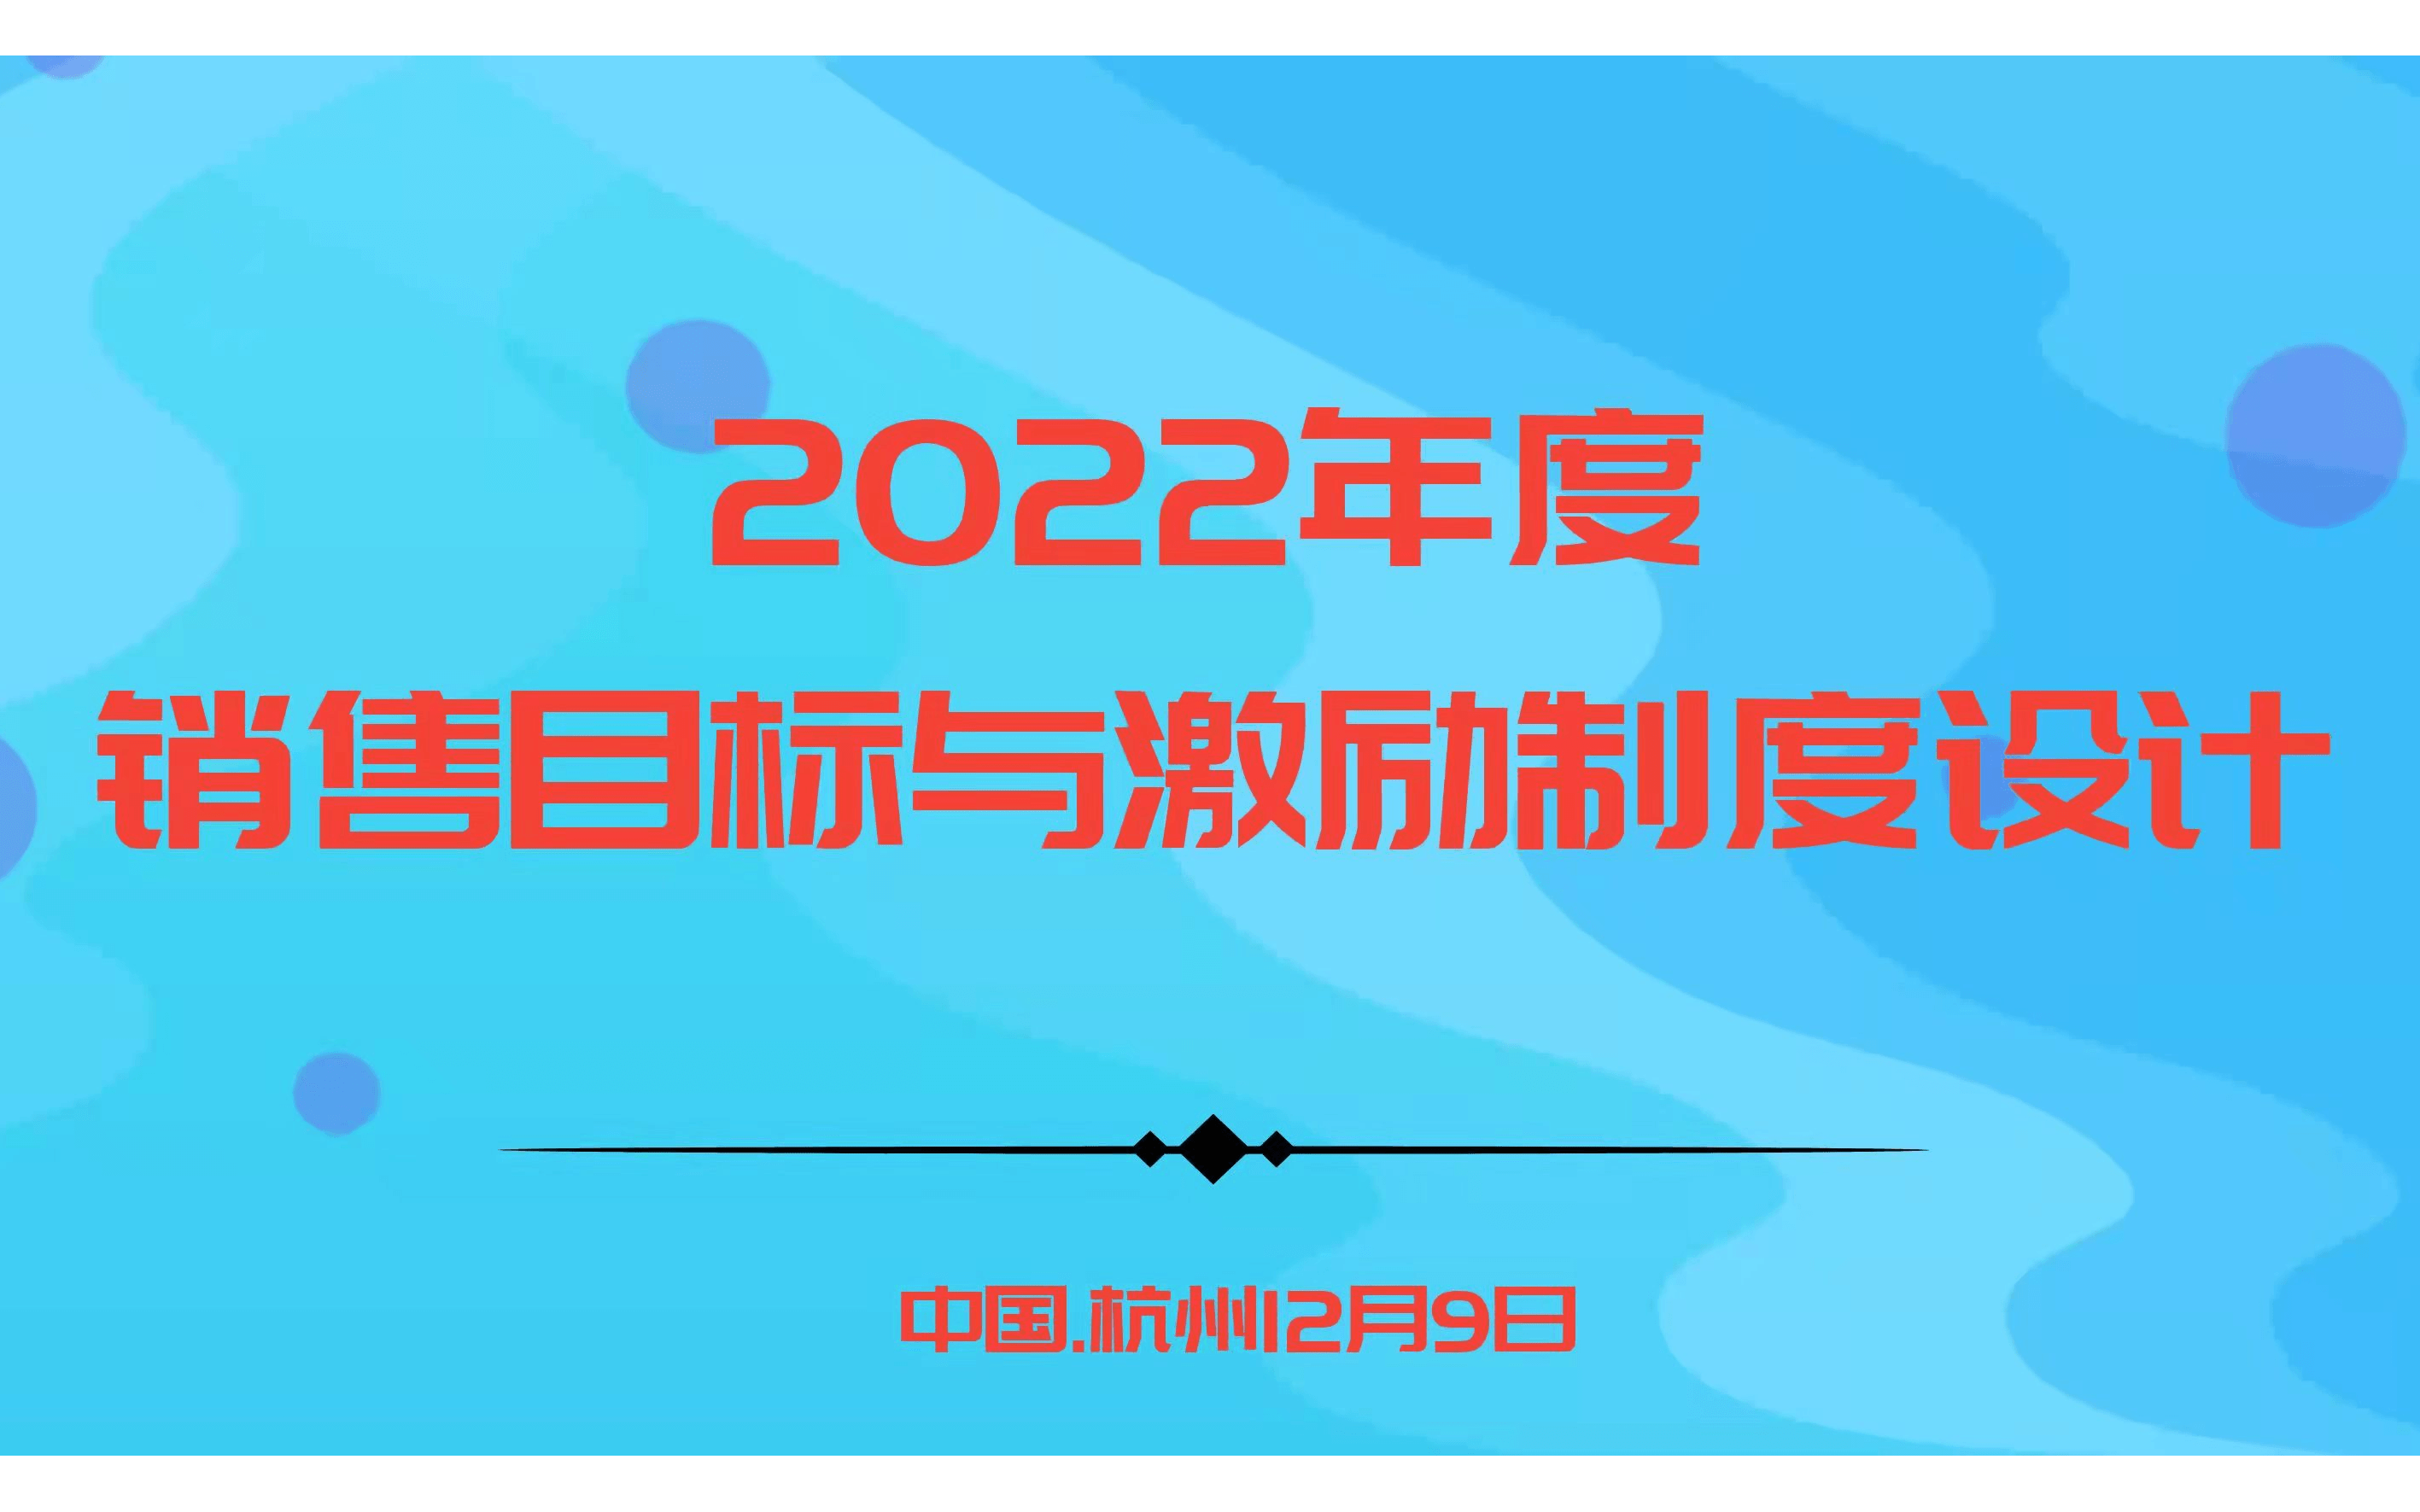 華為、阿里指定課程－2022年度銷售目標與激勵制度設計 |杭州12.9歐圖歐商學院